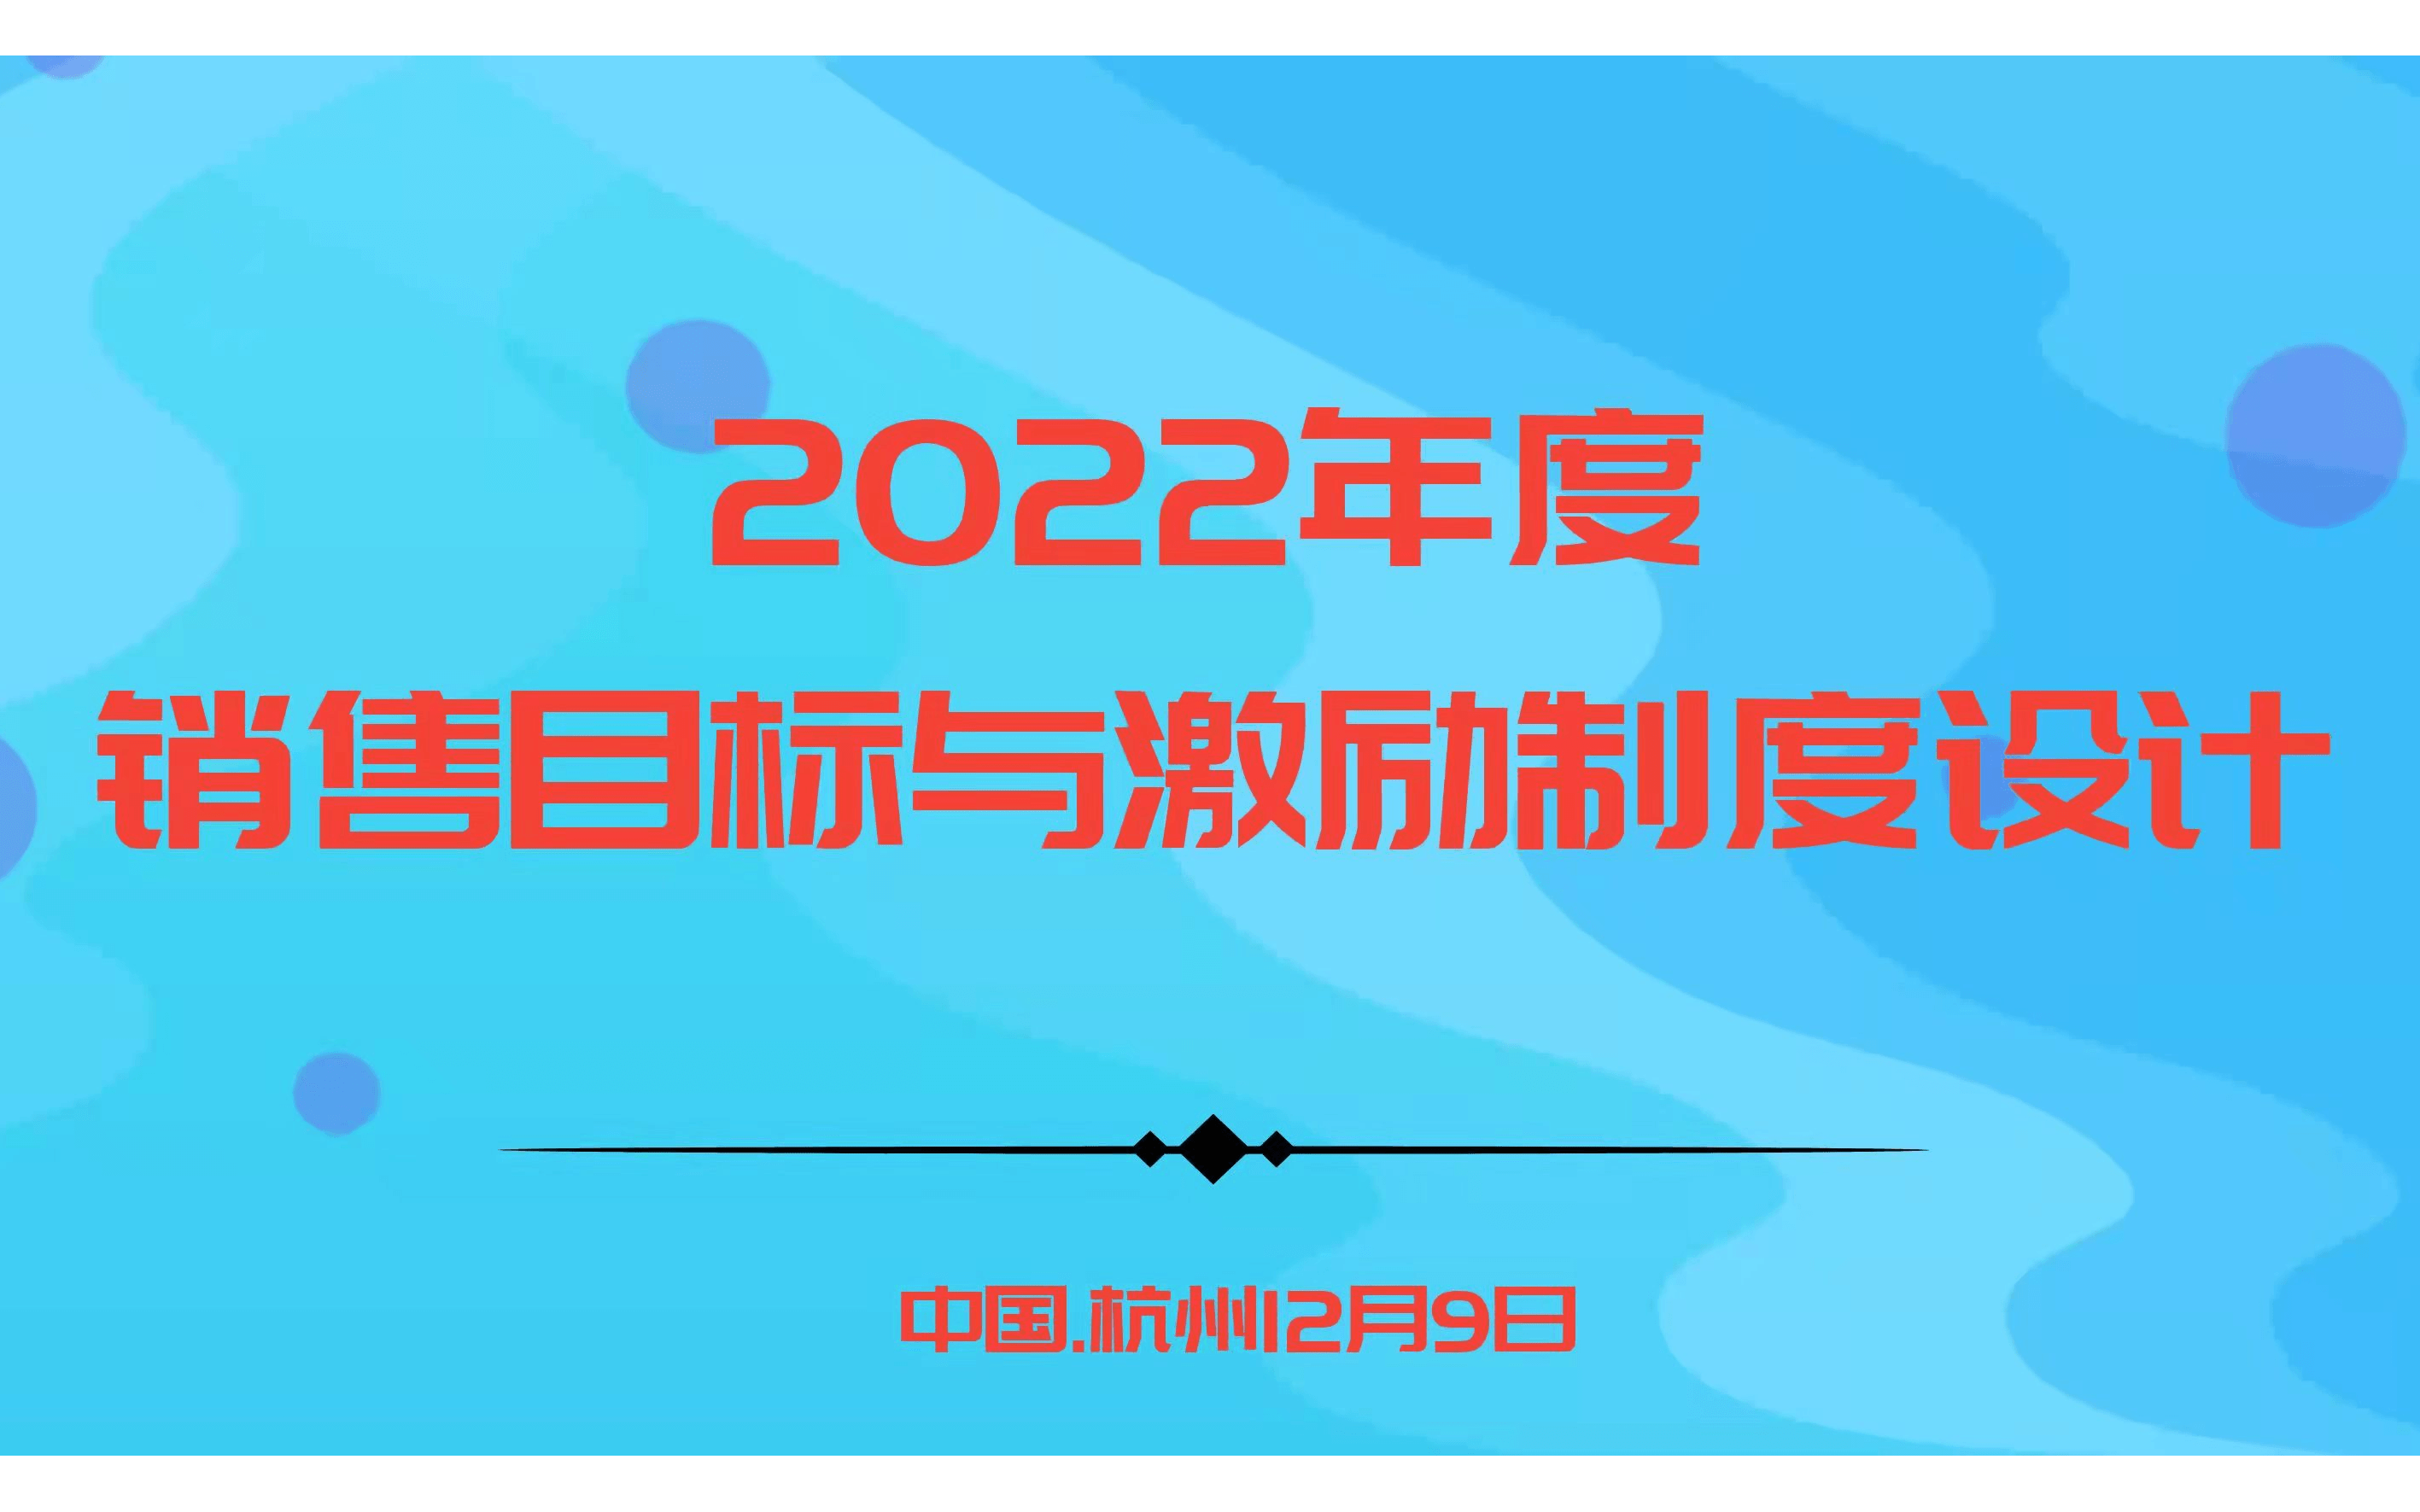 華為、阿里指定課程－2022年度銷售目標與激勵制度設計 |杭州12.9歐圖歐商學院